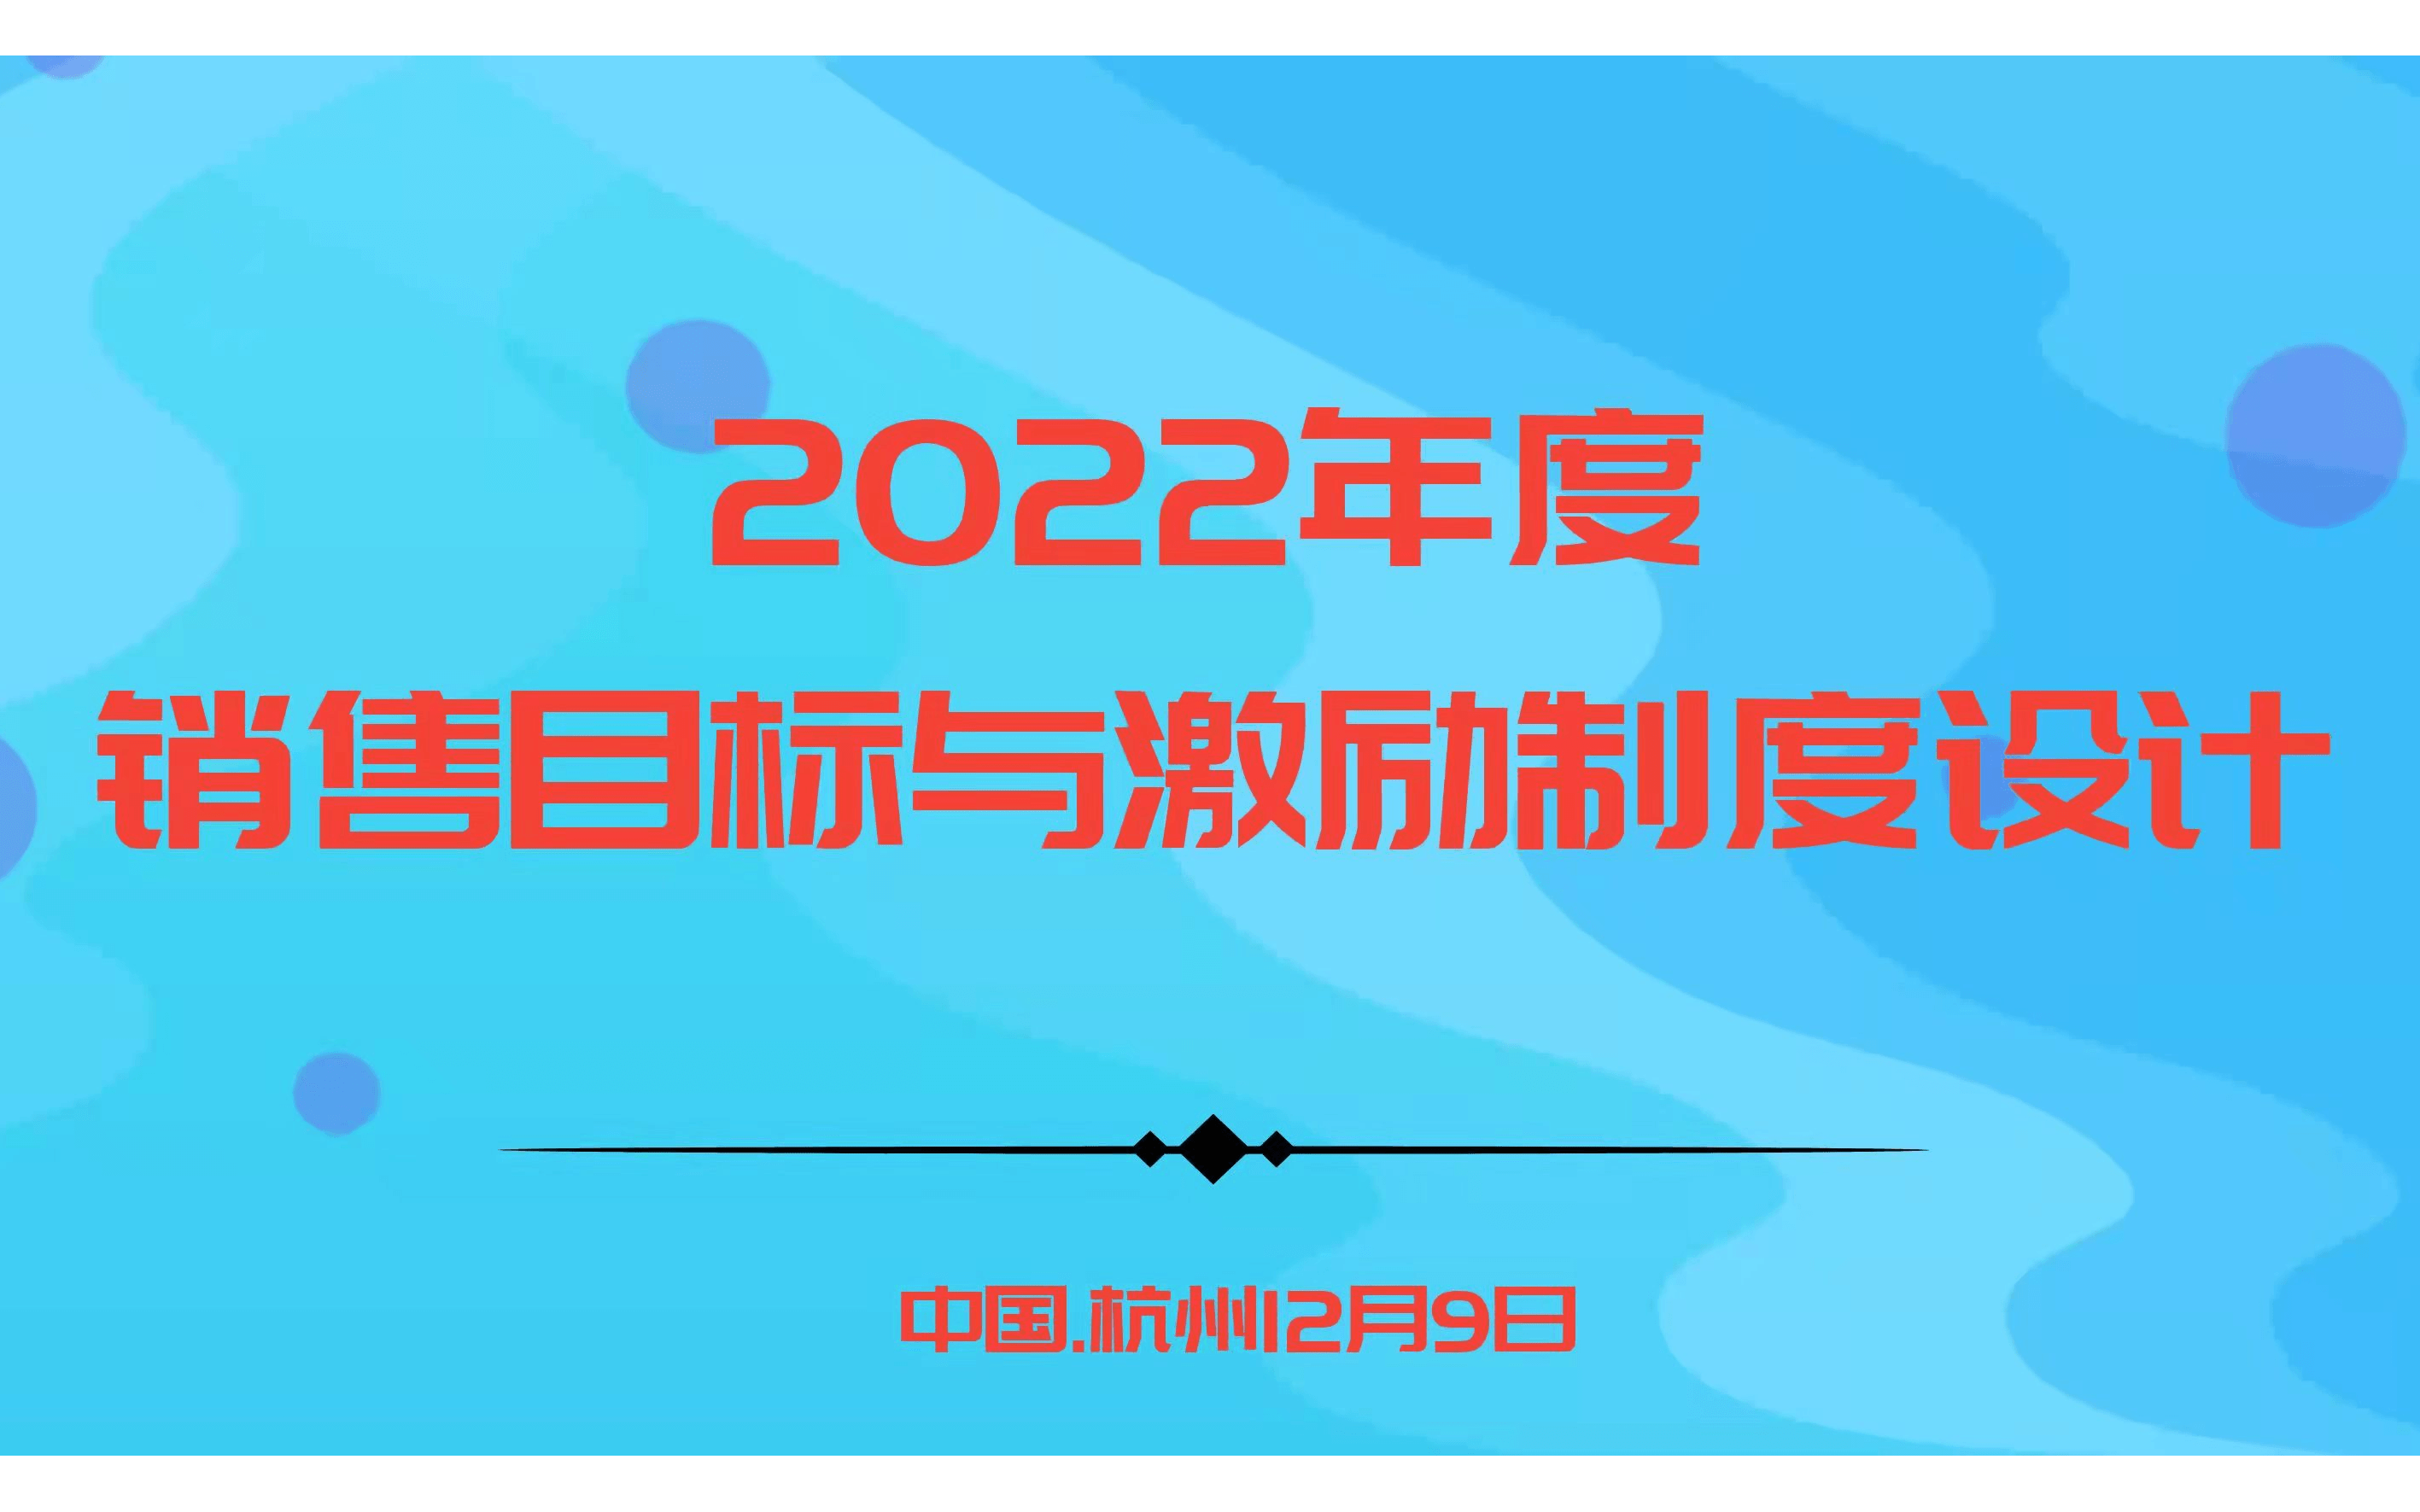 華為、阿里指定課程－2022年度銷售目標與激勵制度設計 |杭州12.9歐圖歐商學院